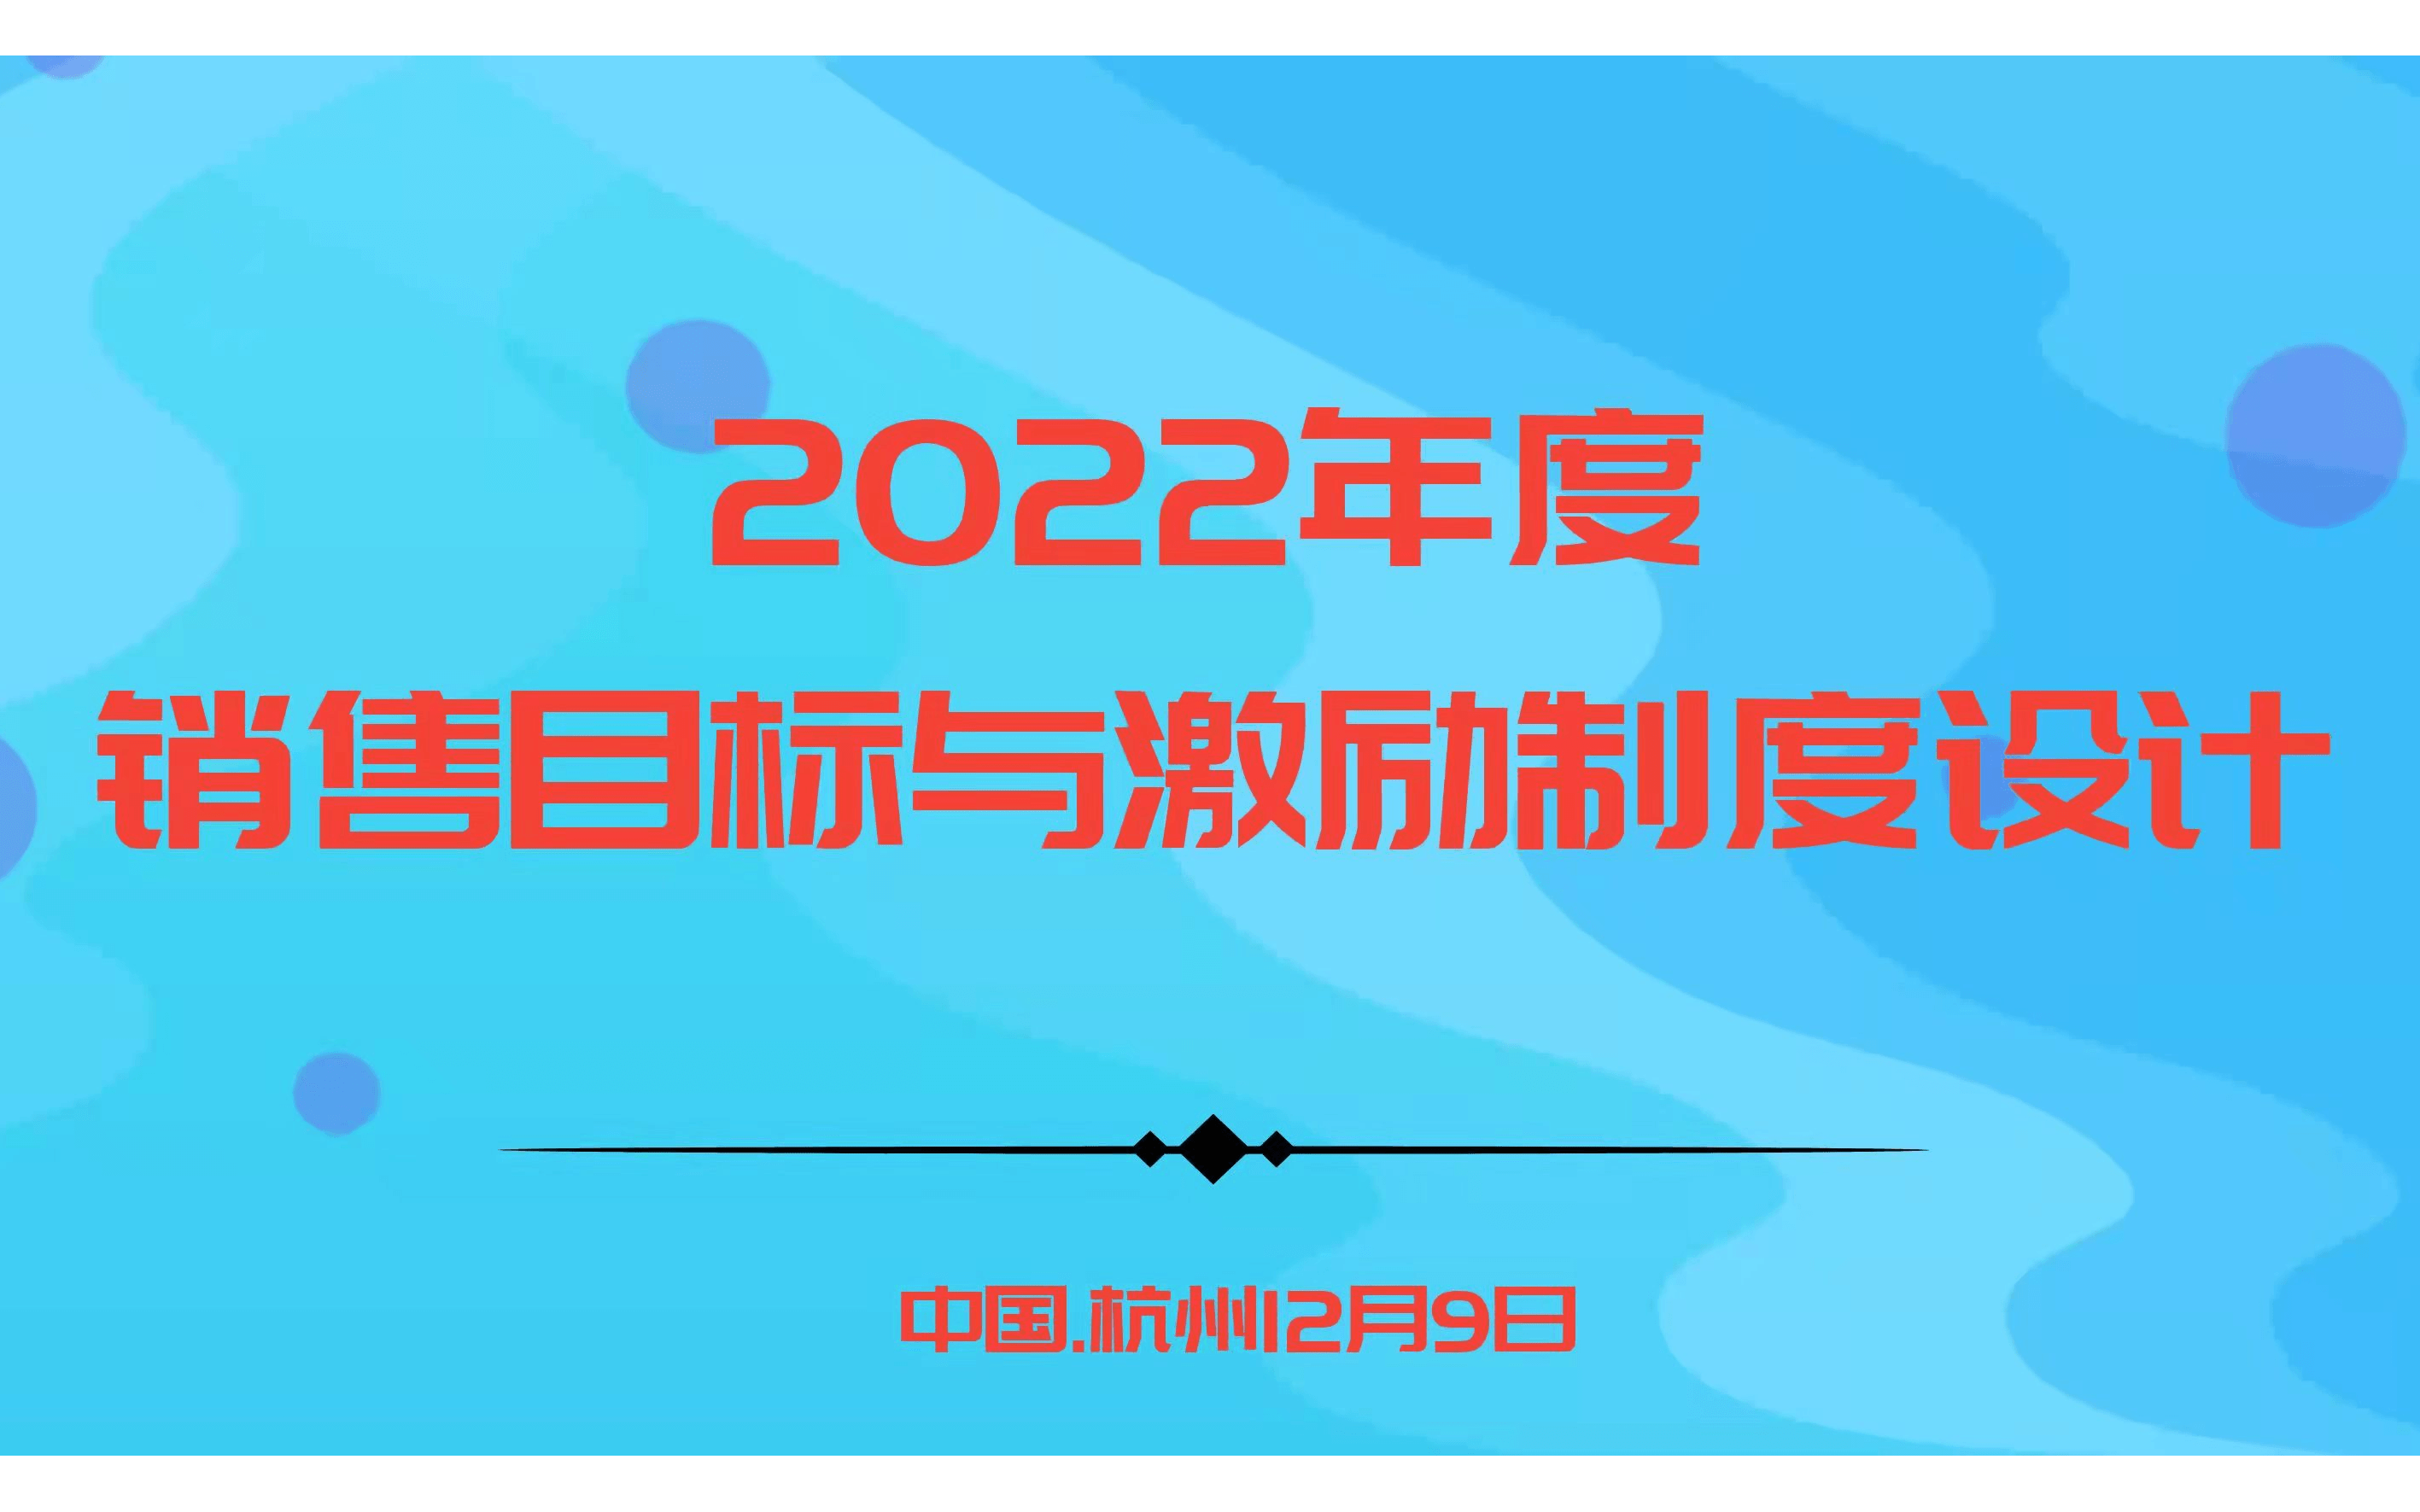 華為、阿里指定課程－2022年度銷售目標與激勵制度設計 |杭州12.9歐圖歐商學院